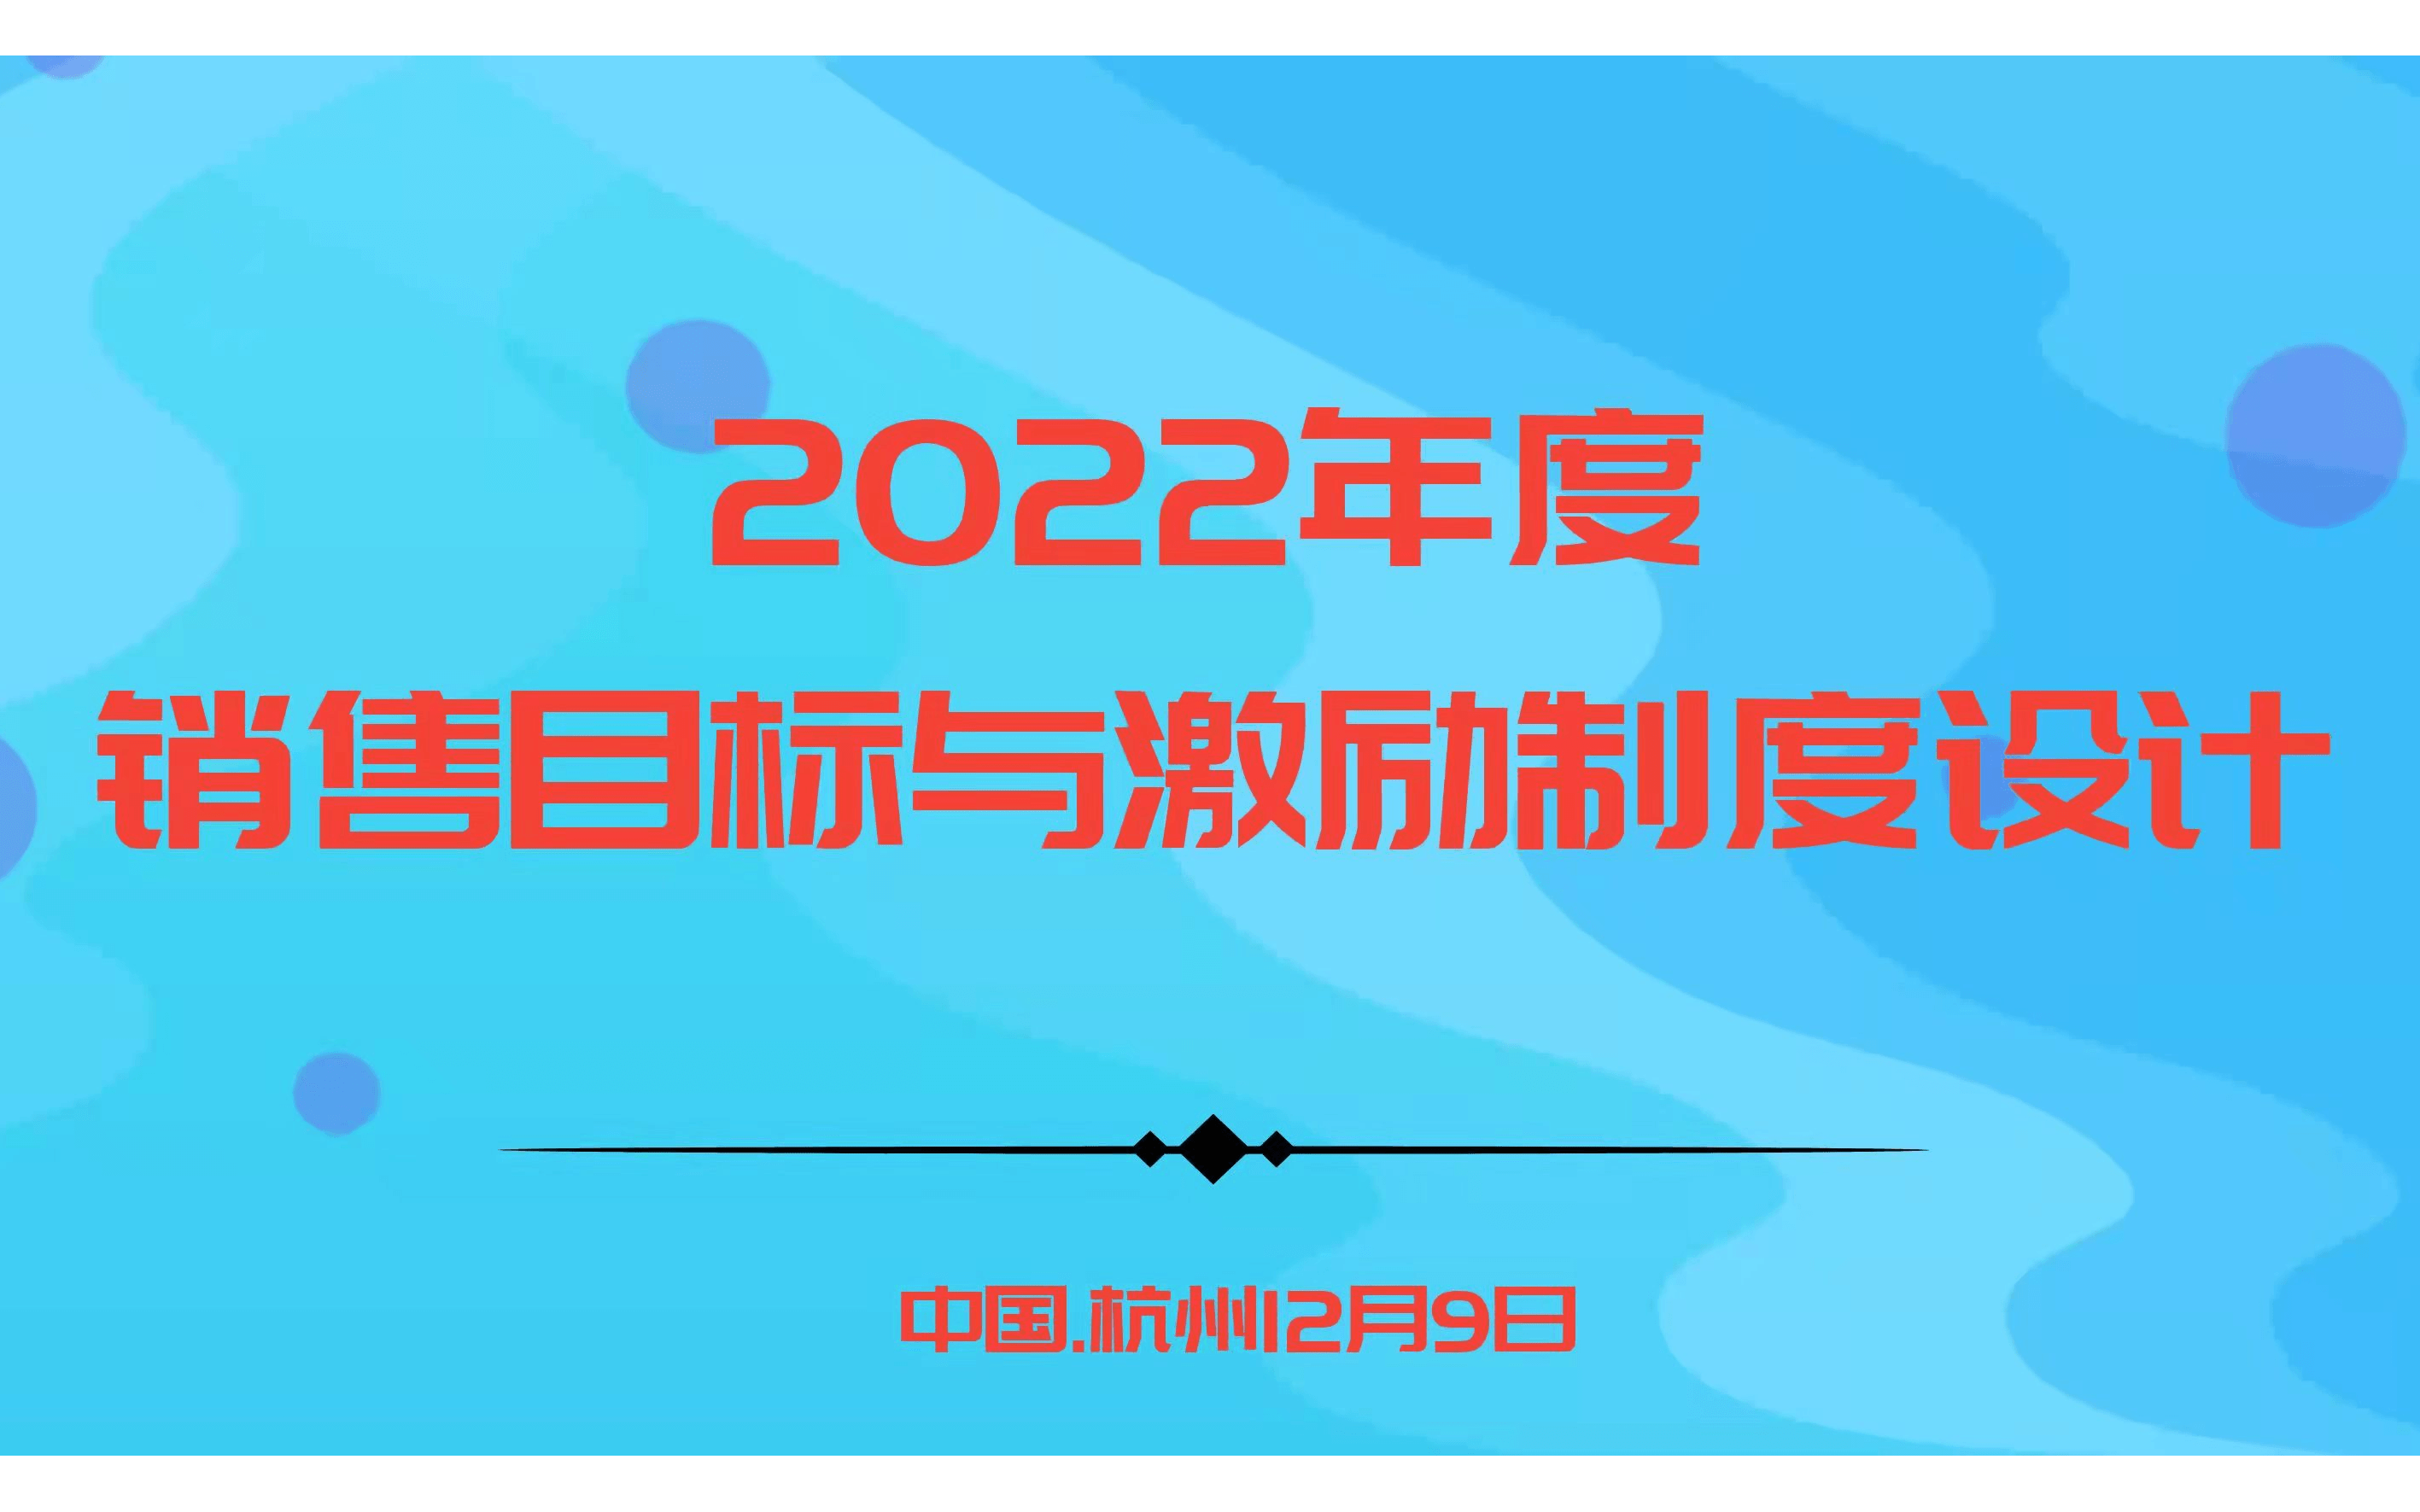 華為、阿里指定課程－2022年度銷售目標與激勵制度設計 |杭州12.9歐圖歐商學院